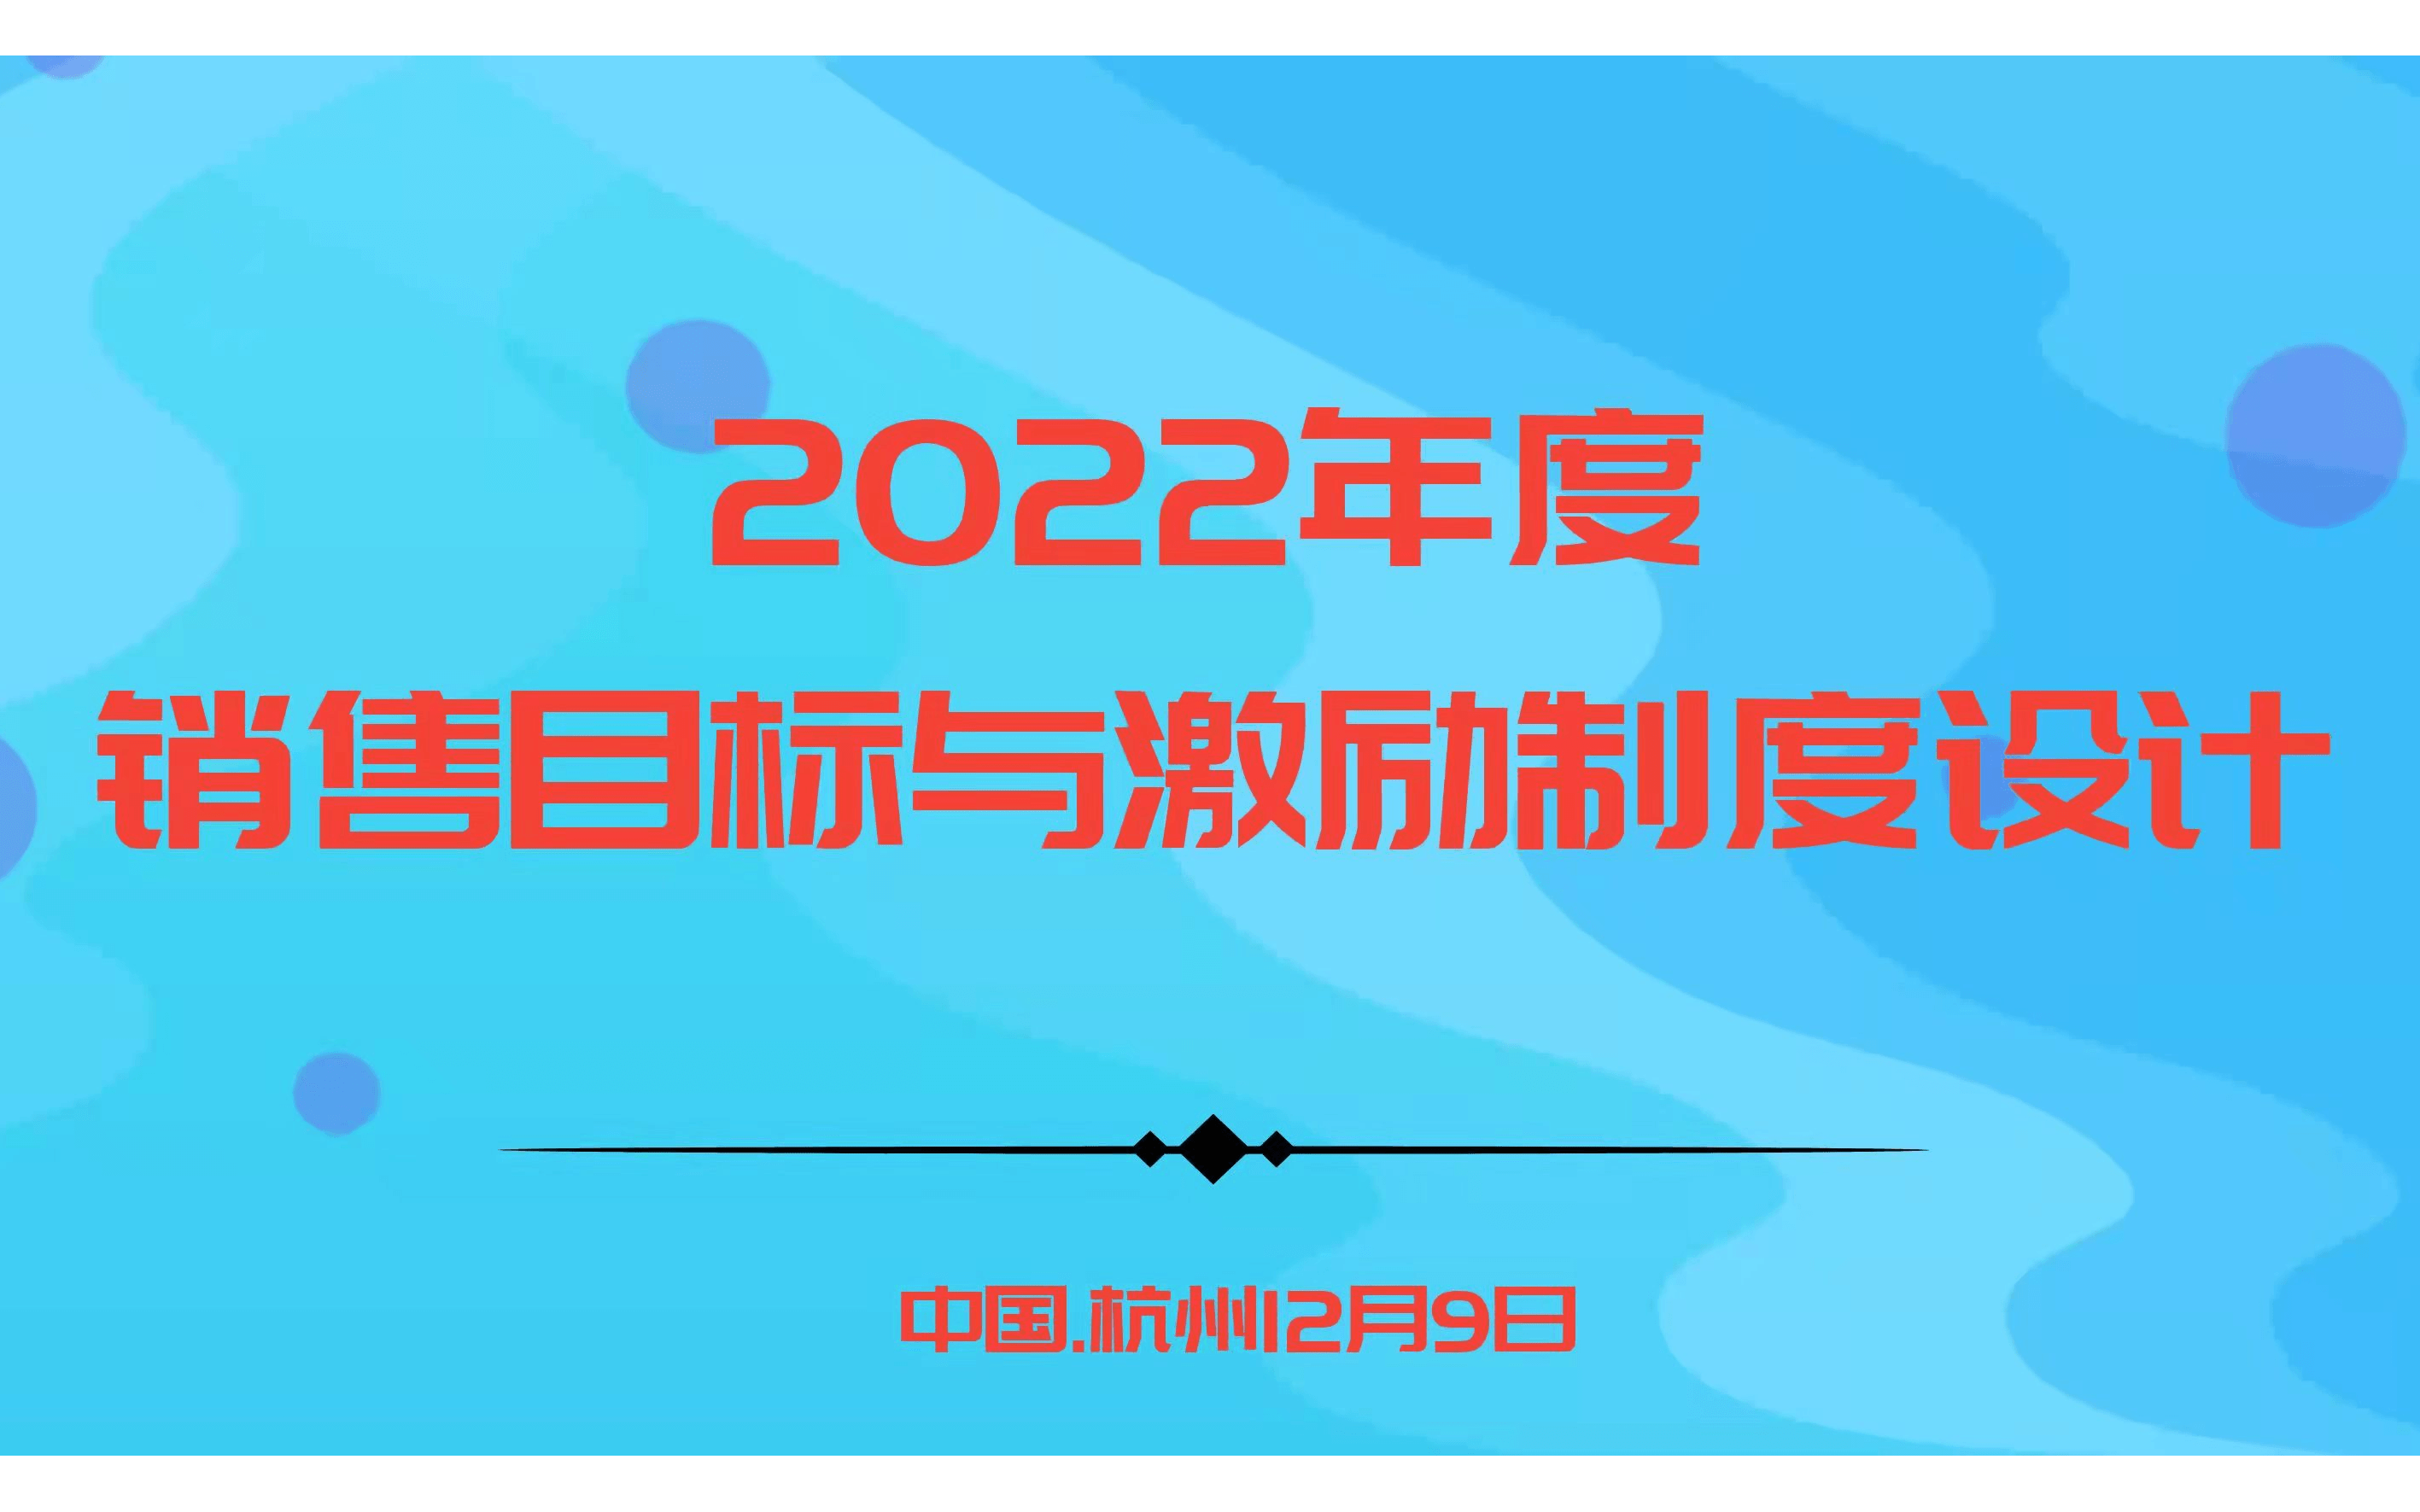 華為、阿里指定課程－2022年度銷售目標與激勵制度設計 |杭州12.9歐圖歐商學院